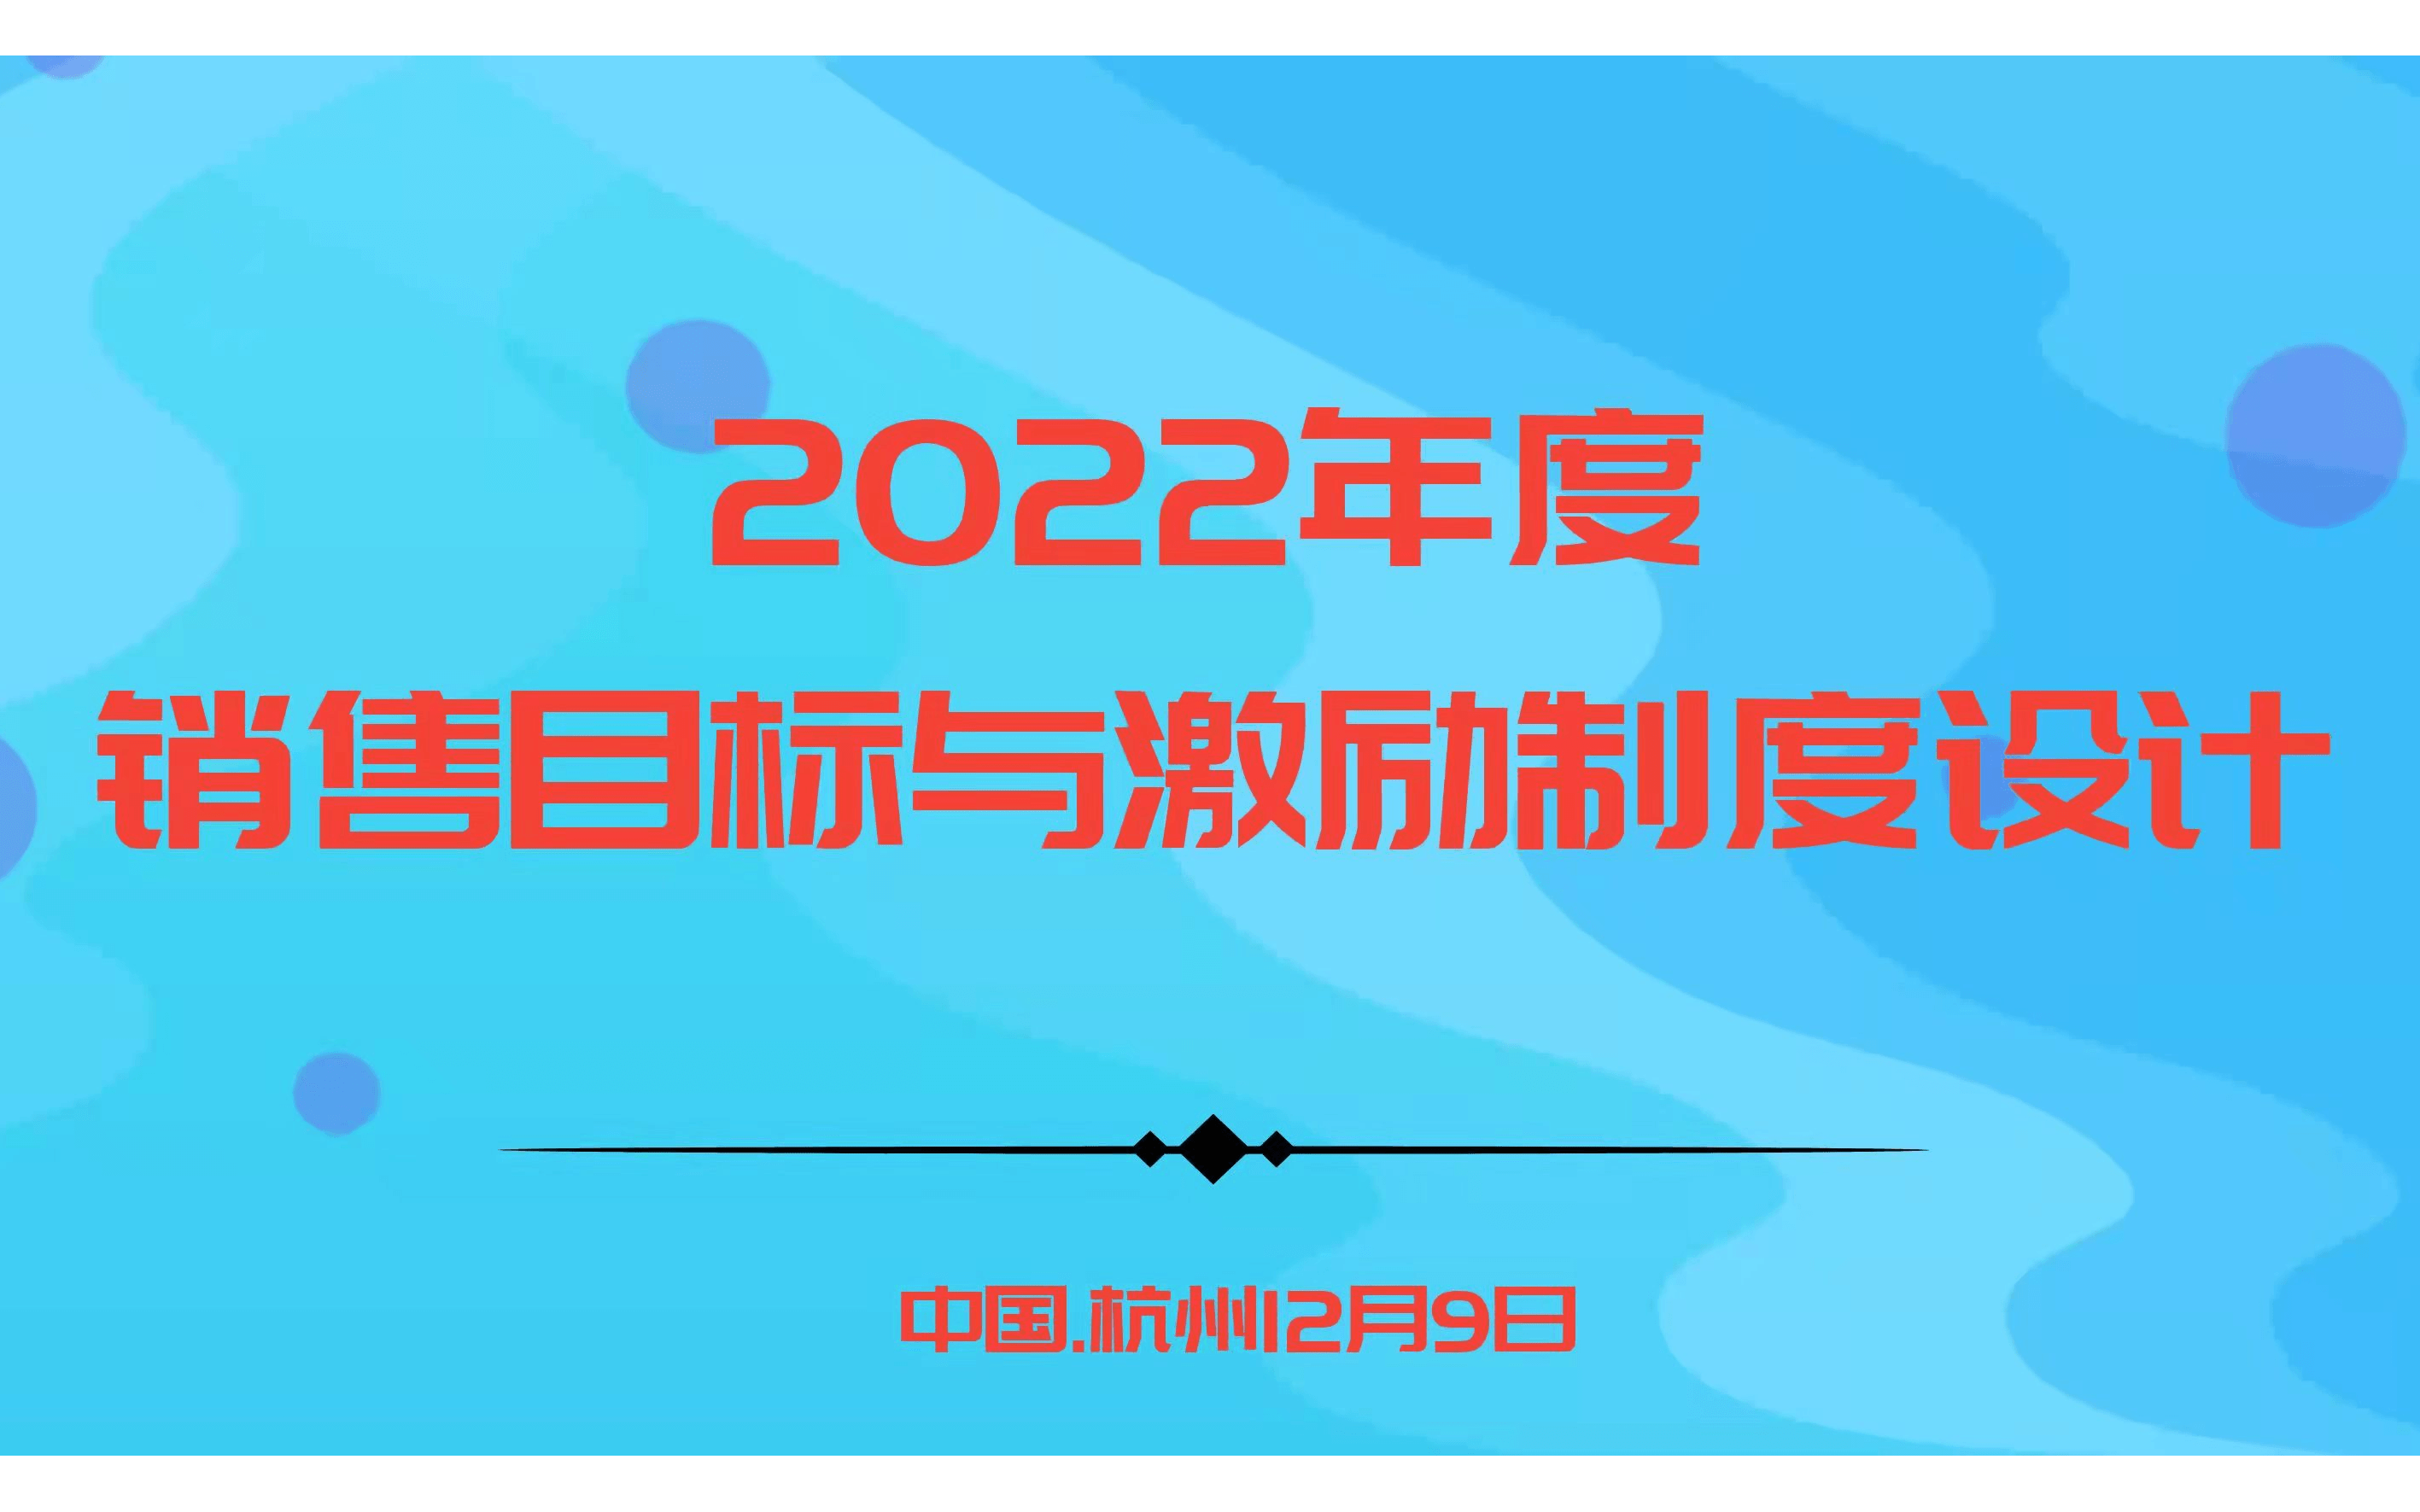 華為、阿里指定課程－2022年度銷售目標與激勵制度設計 |杭州12.9歐圖歐商學院